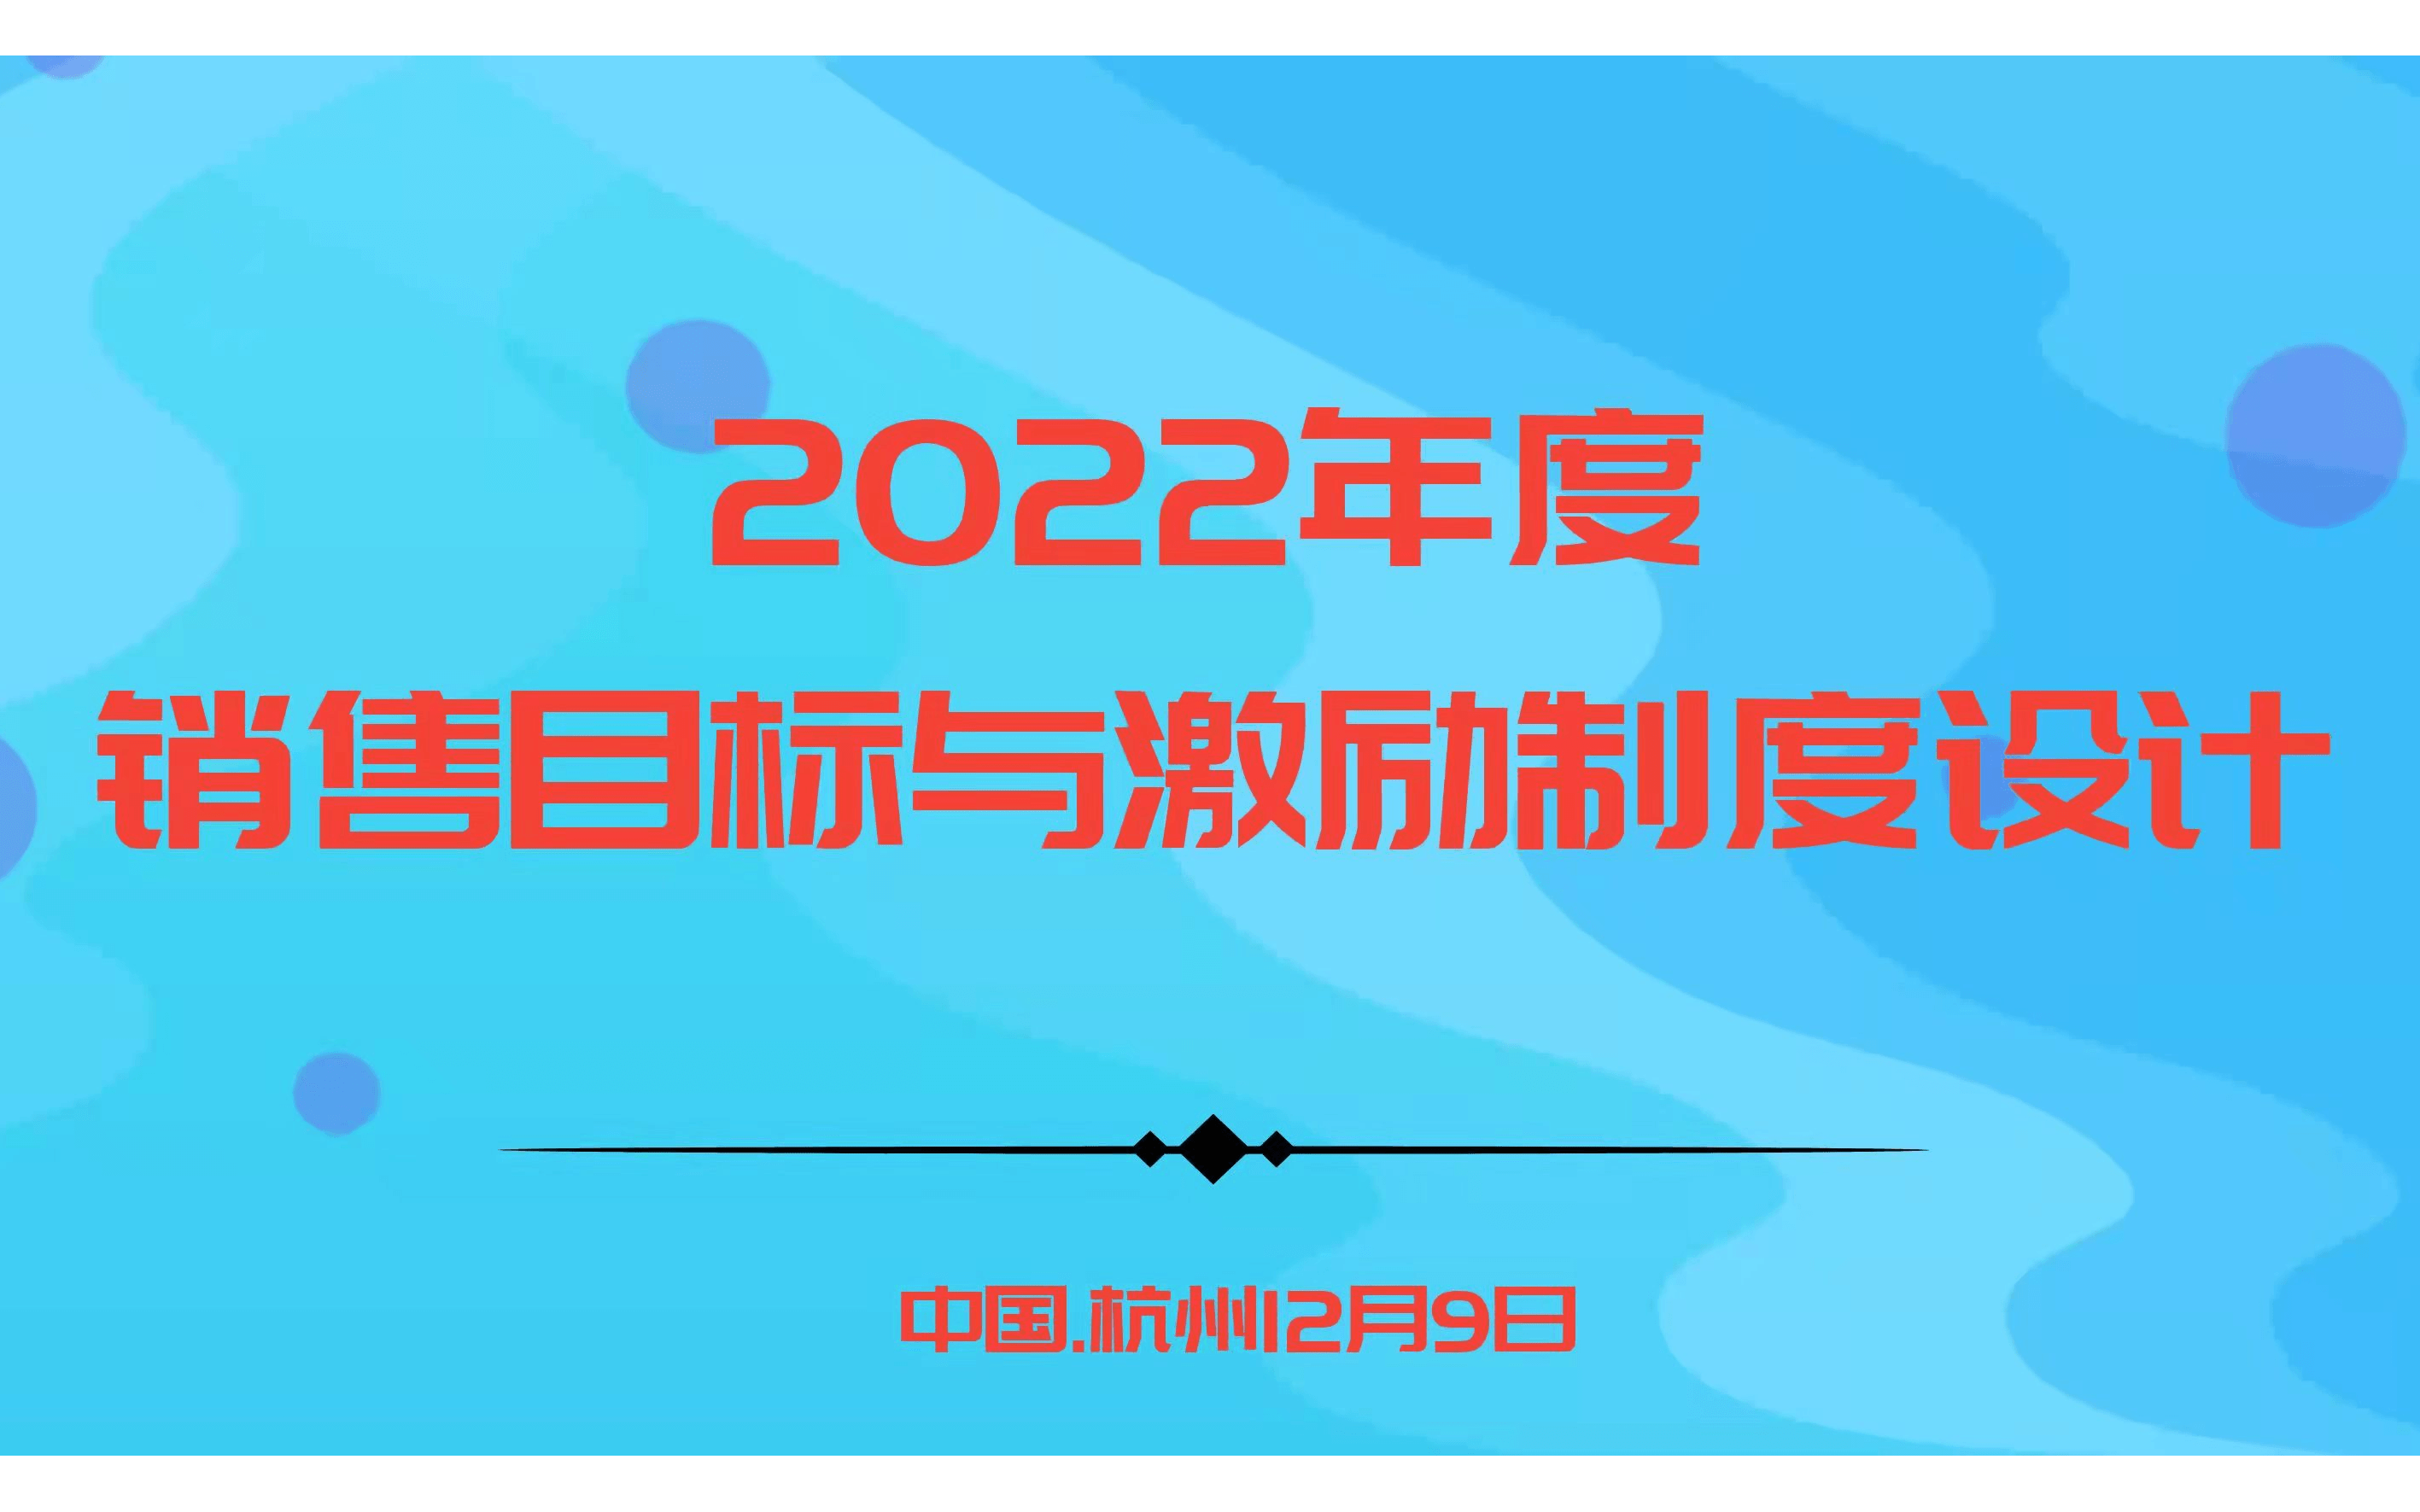 華為、阿里指定課程－2022年度銷售目標與激勵制度設計 |杭州12.9歐圖歐商學院